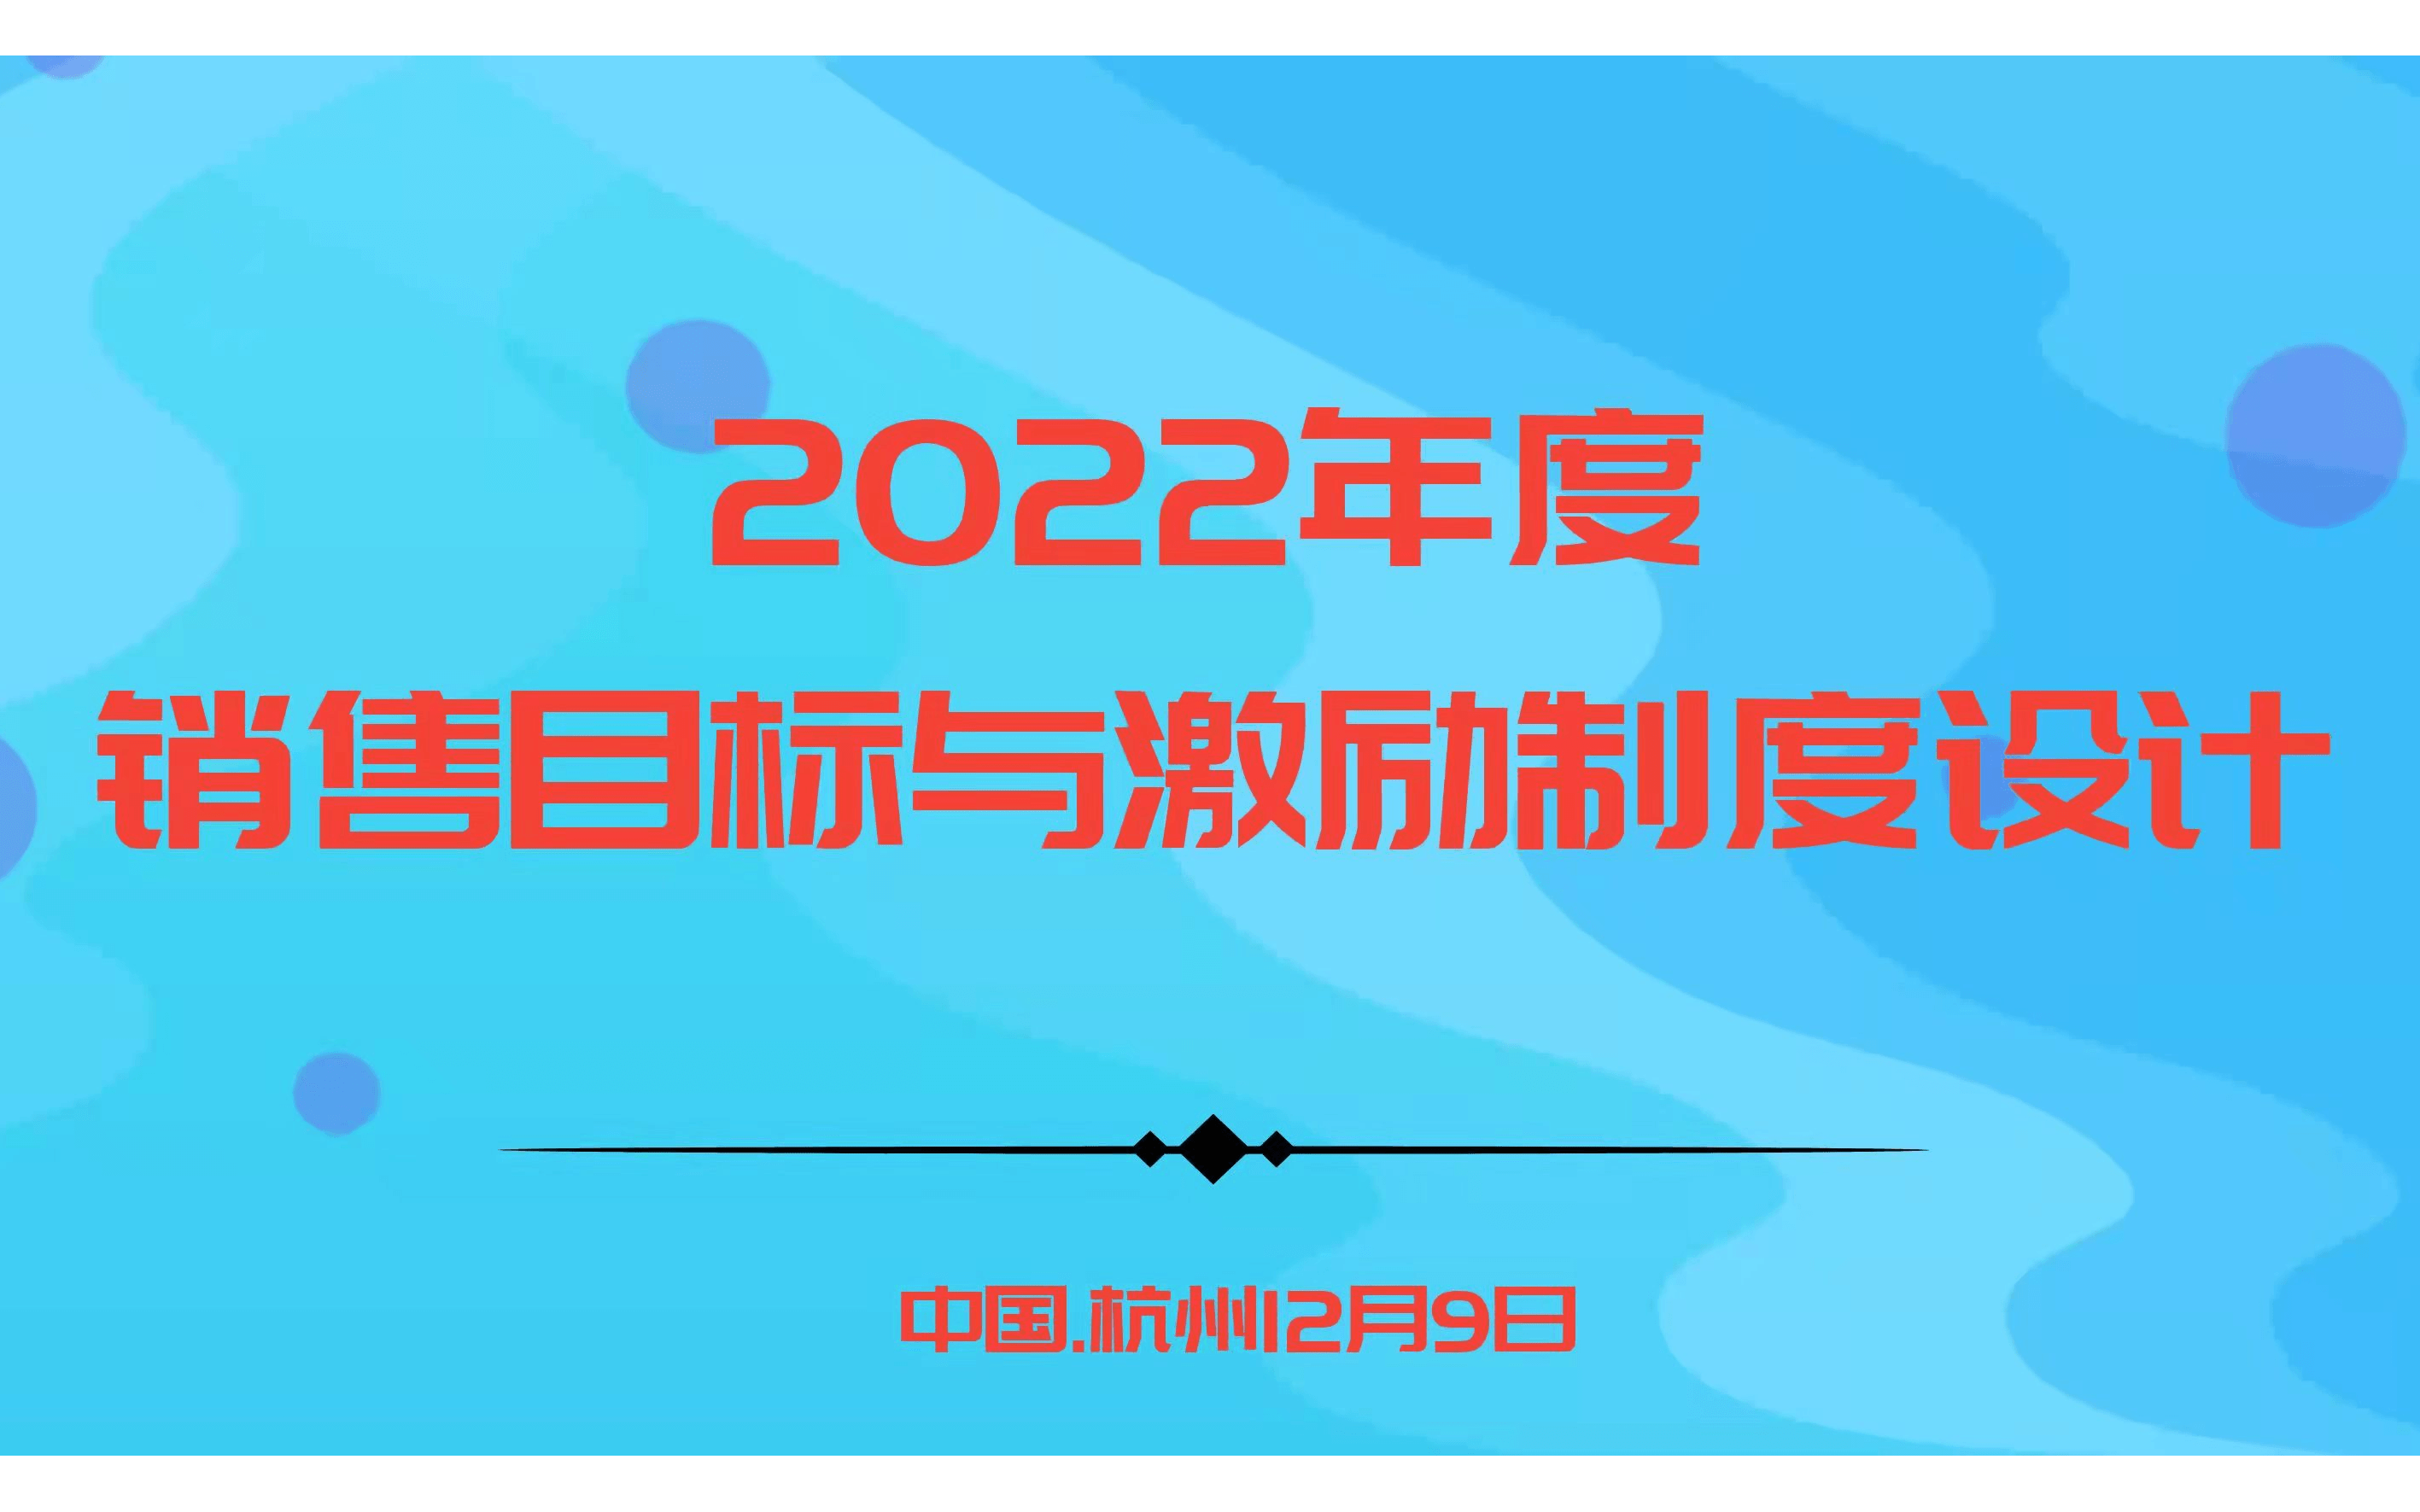 華為、阿里指定課程－2022年度銷售目標與激勵制度設計 |杭州12.9歐圖歐商學院